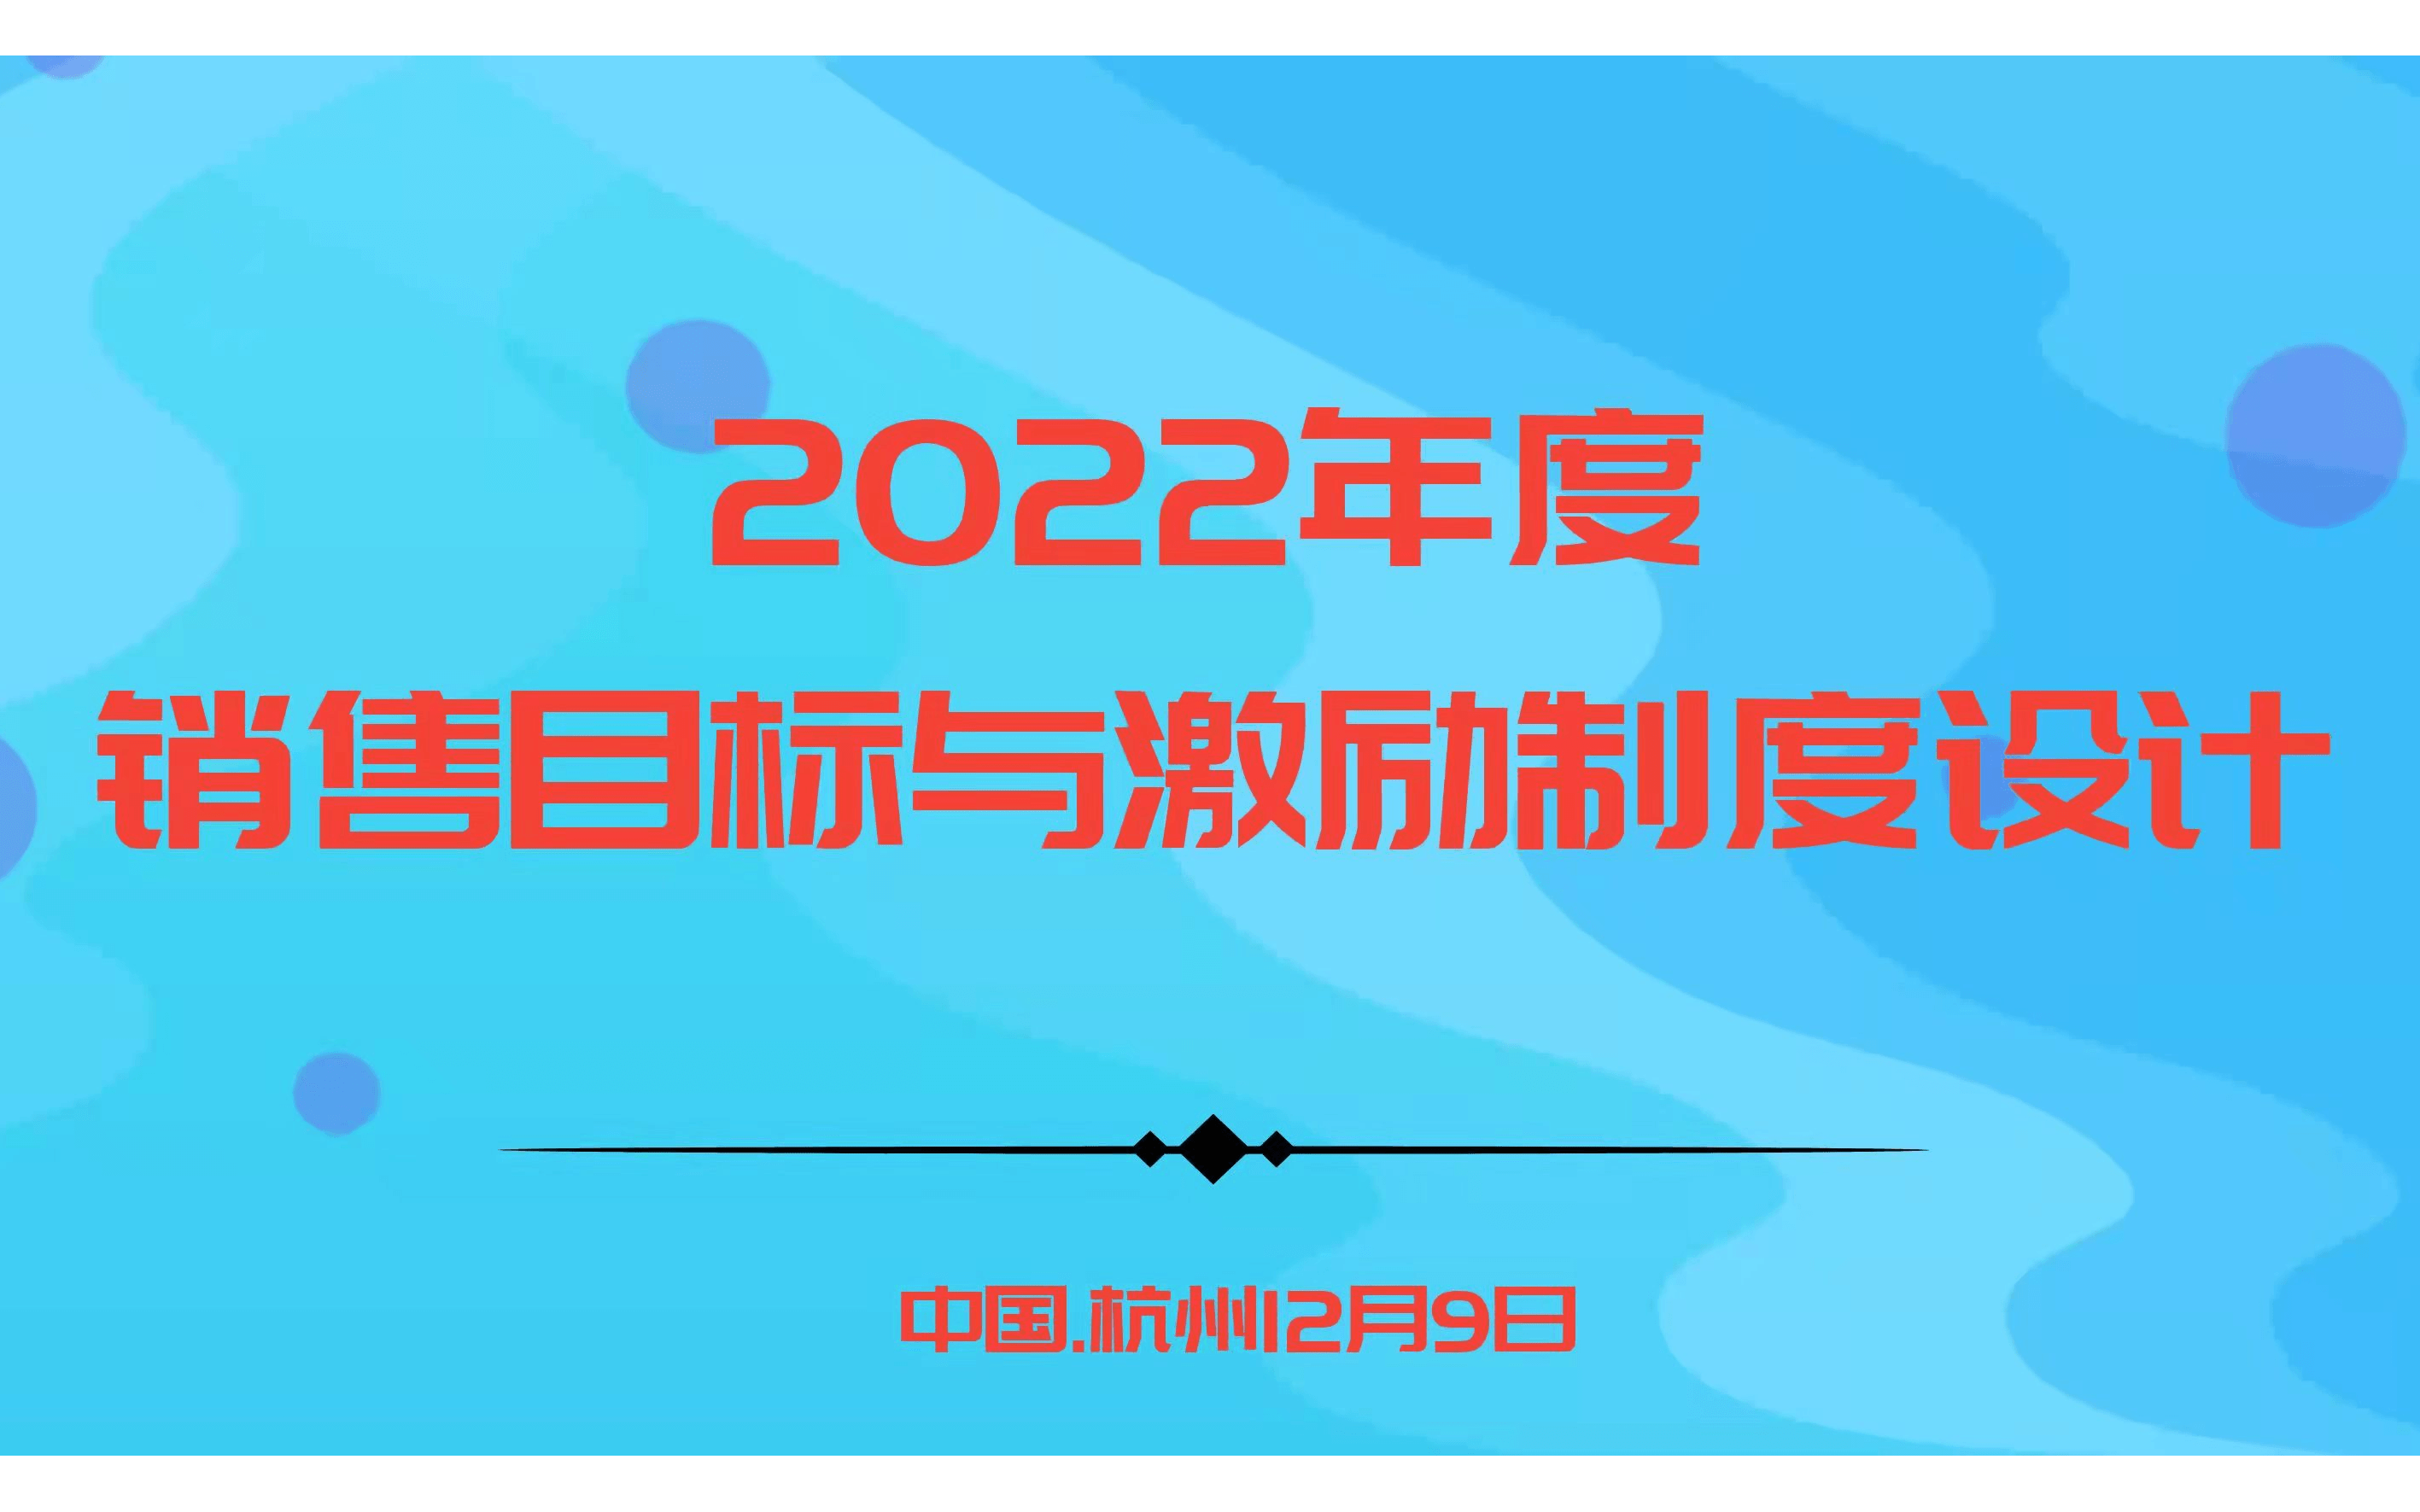 華為、阿里指定課程－2022年度銷售目標與激勵制度設計 |杭州12.9歐圖歐商學院